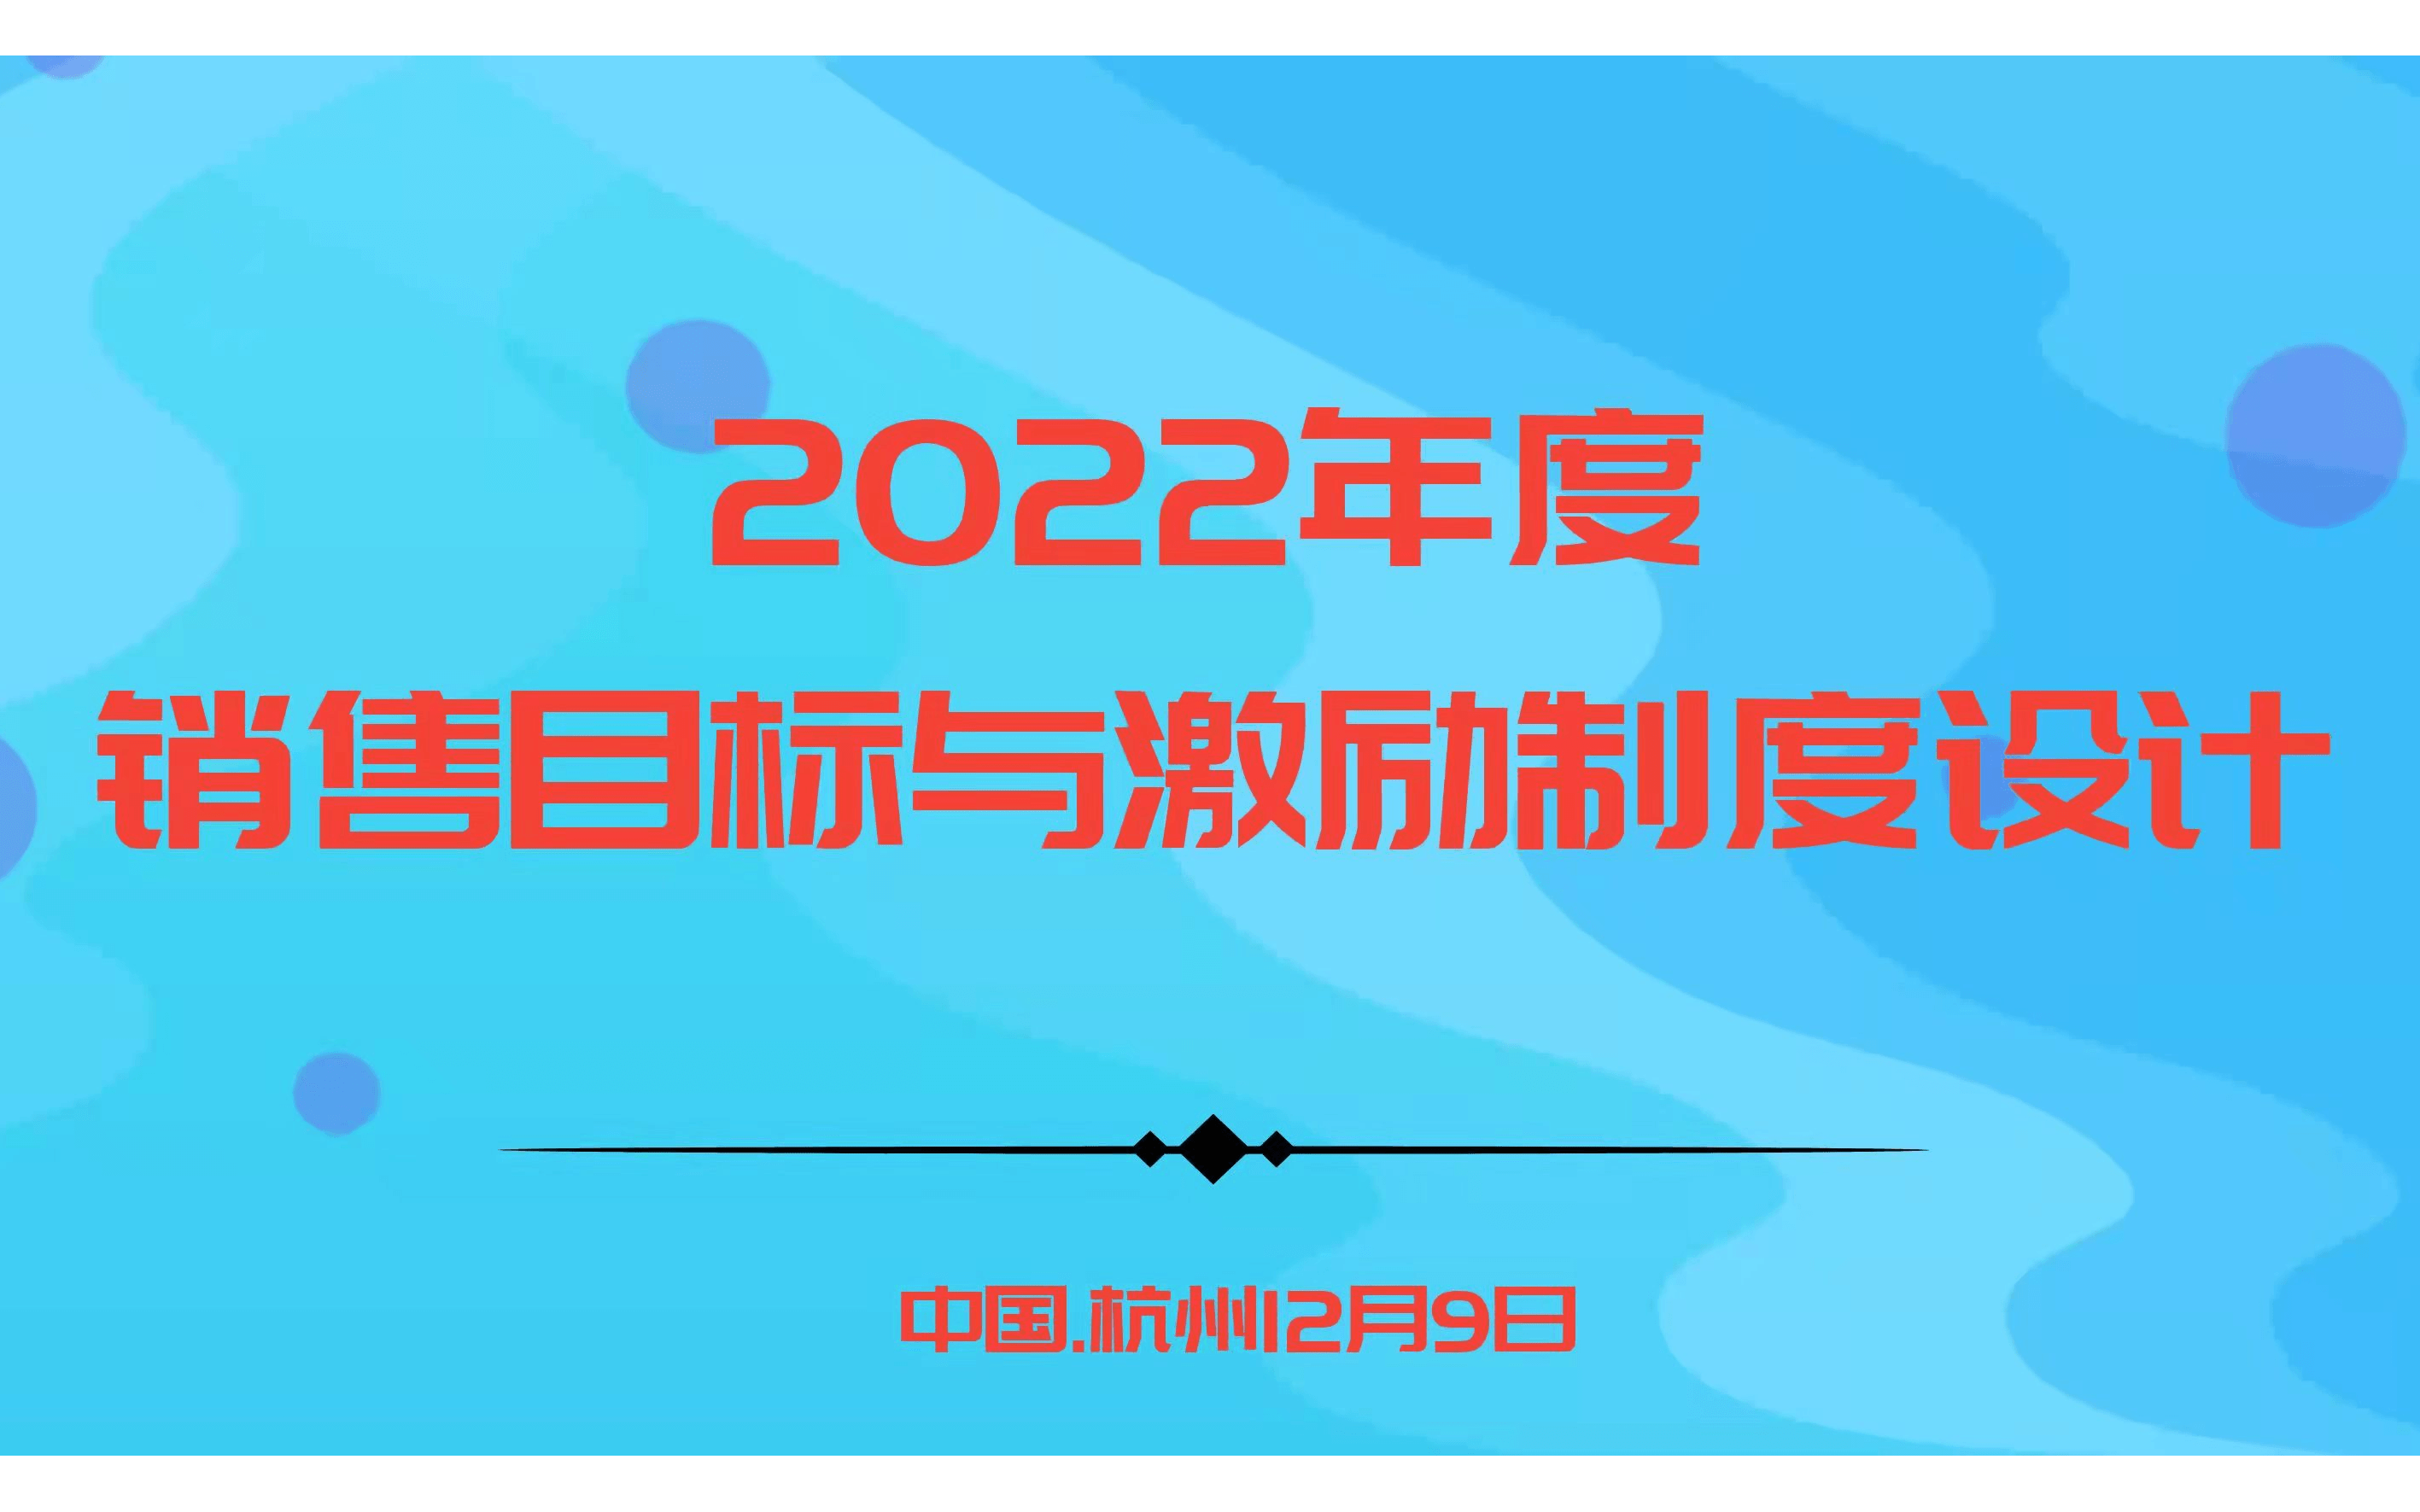 華為、阿里指定課程－2022年度銷售目標與激勵制度設計 |杭州12.9歐圖歐商學院